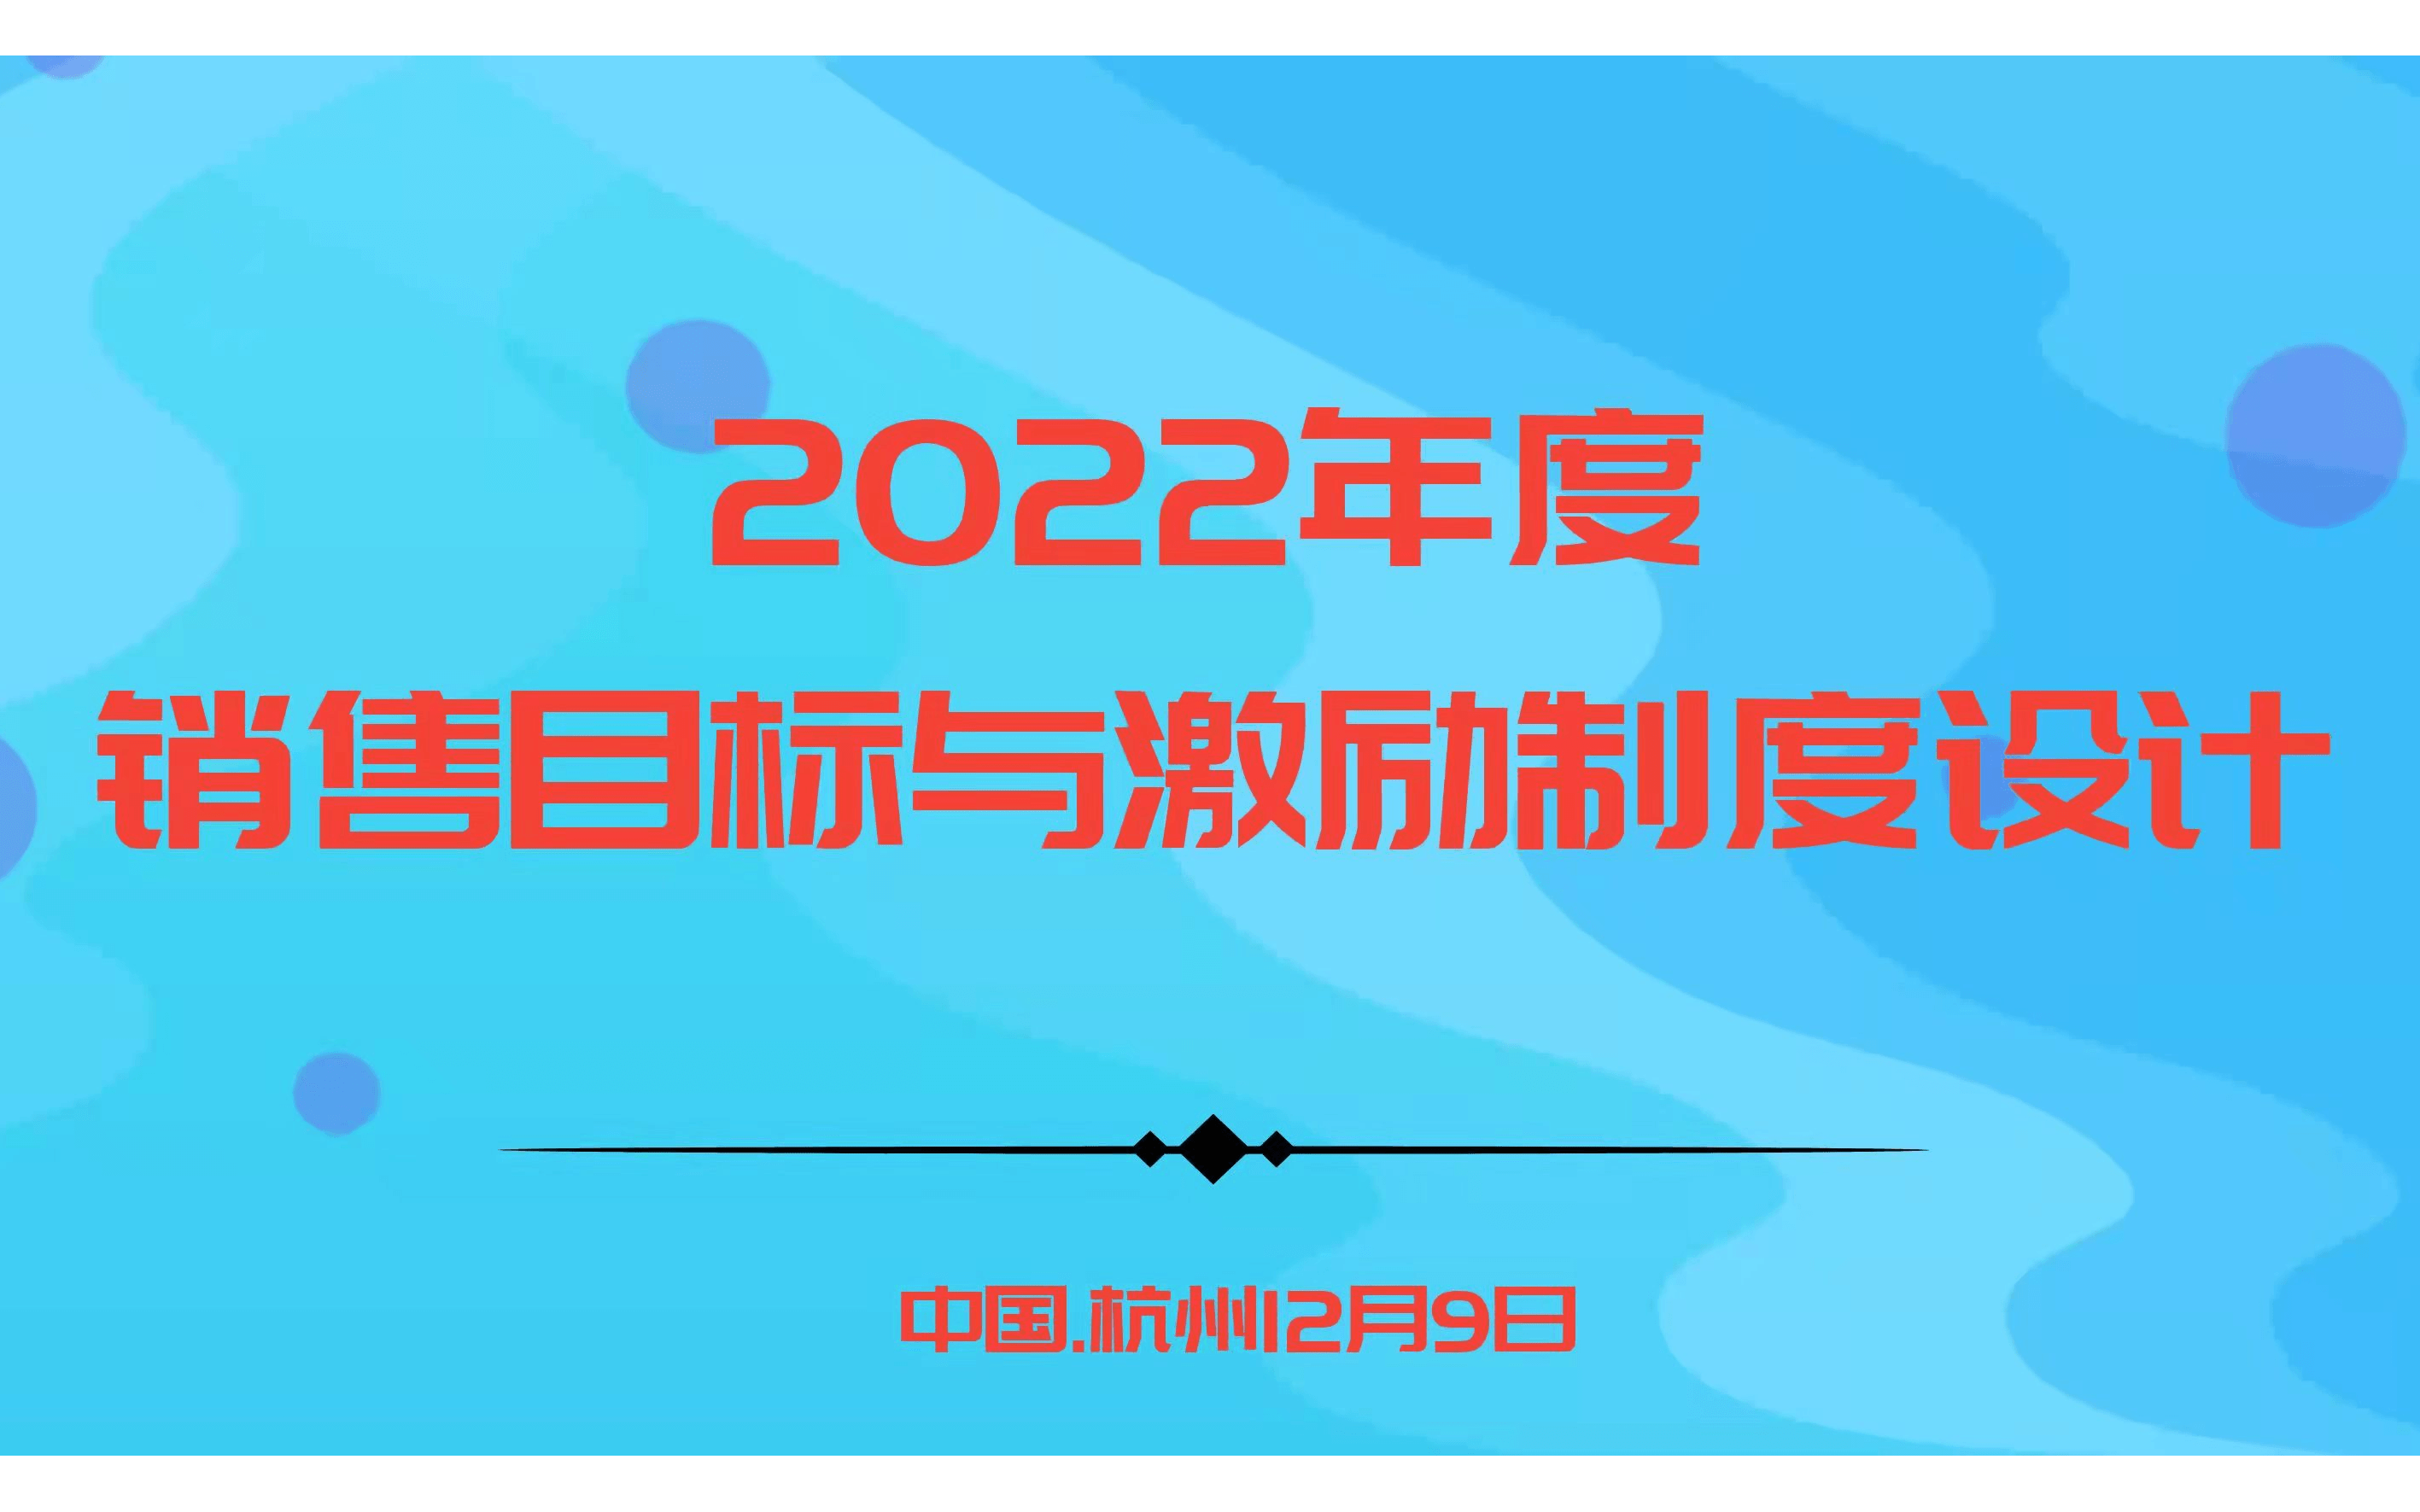 華為、阿里指定課程－2022年度銷售目標與激勵制度設計 |杭州12.9歐圖歐商學院